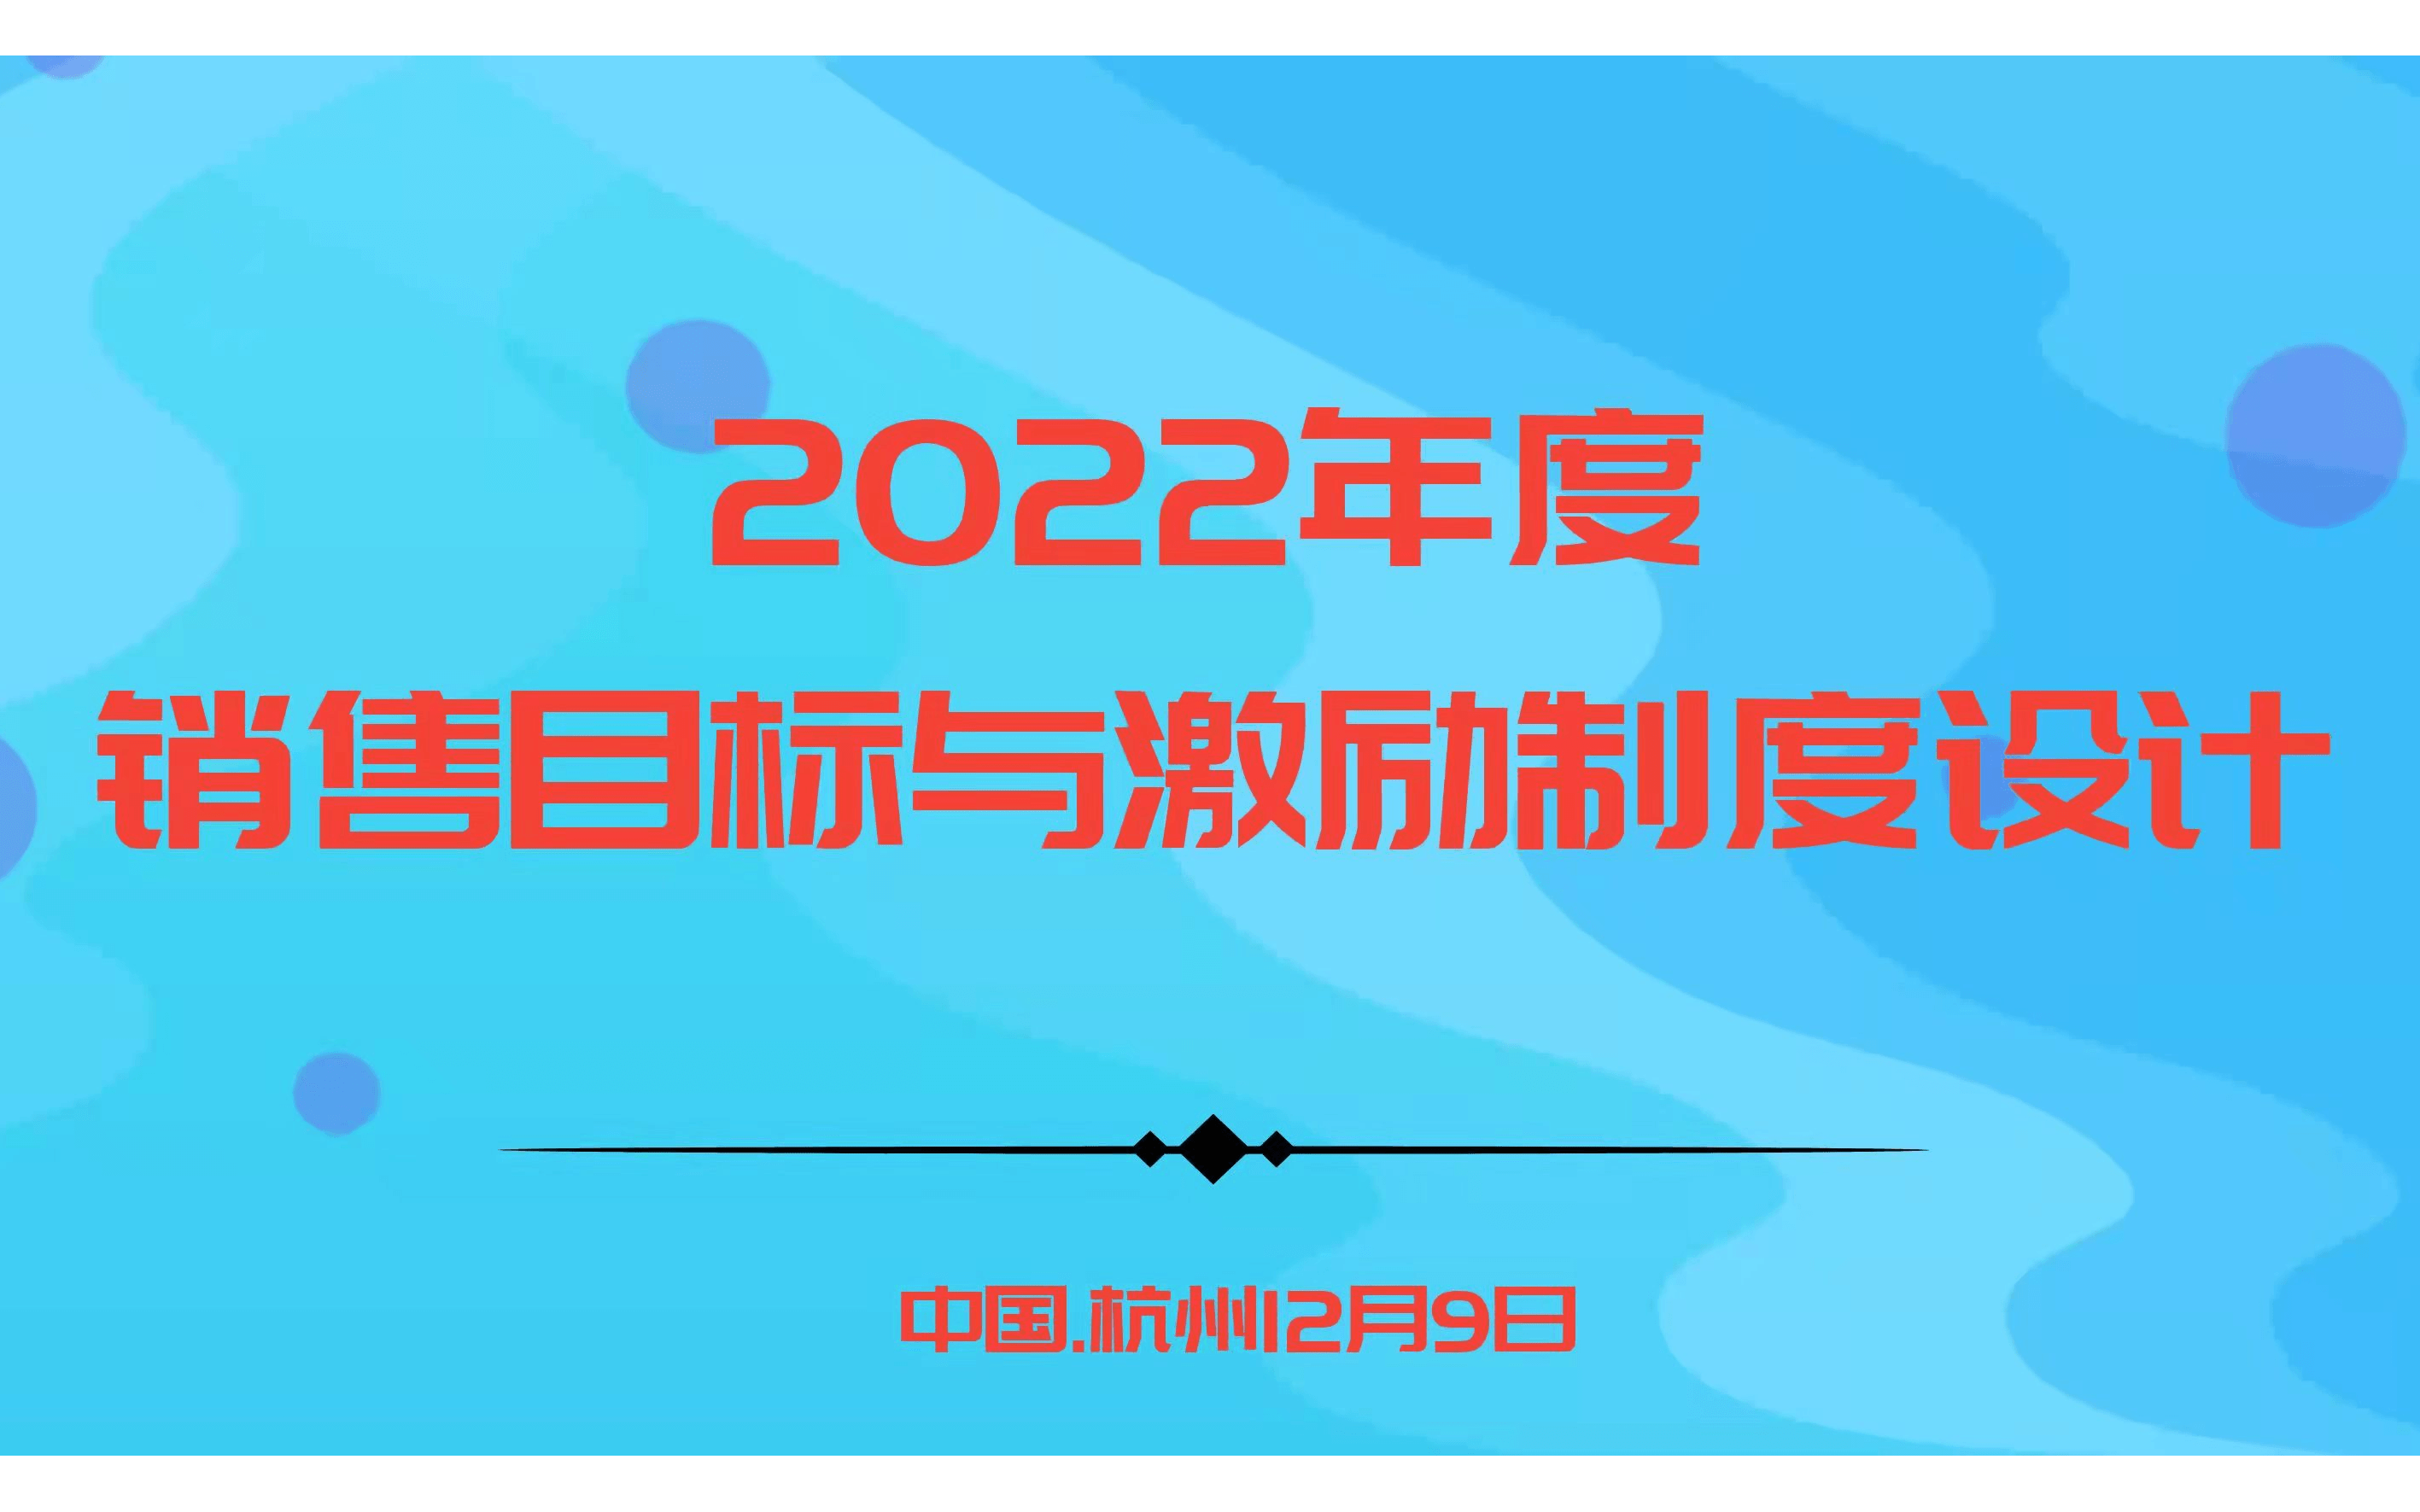 華為、阿里指定課程－2022年度銷售目標與激勵制度設計 |杭州12.9歐圖歐商學院